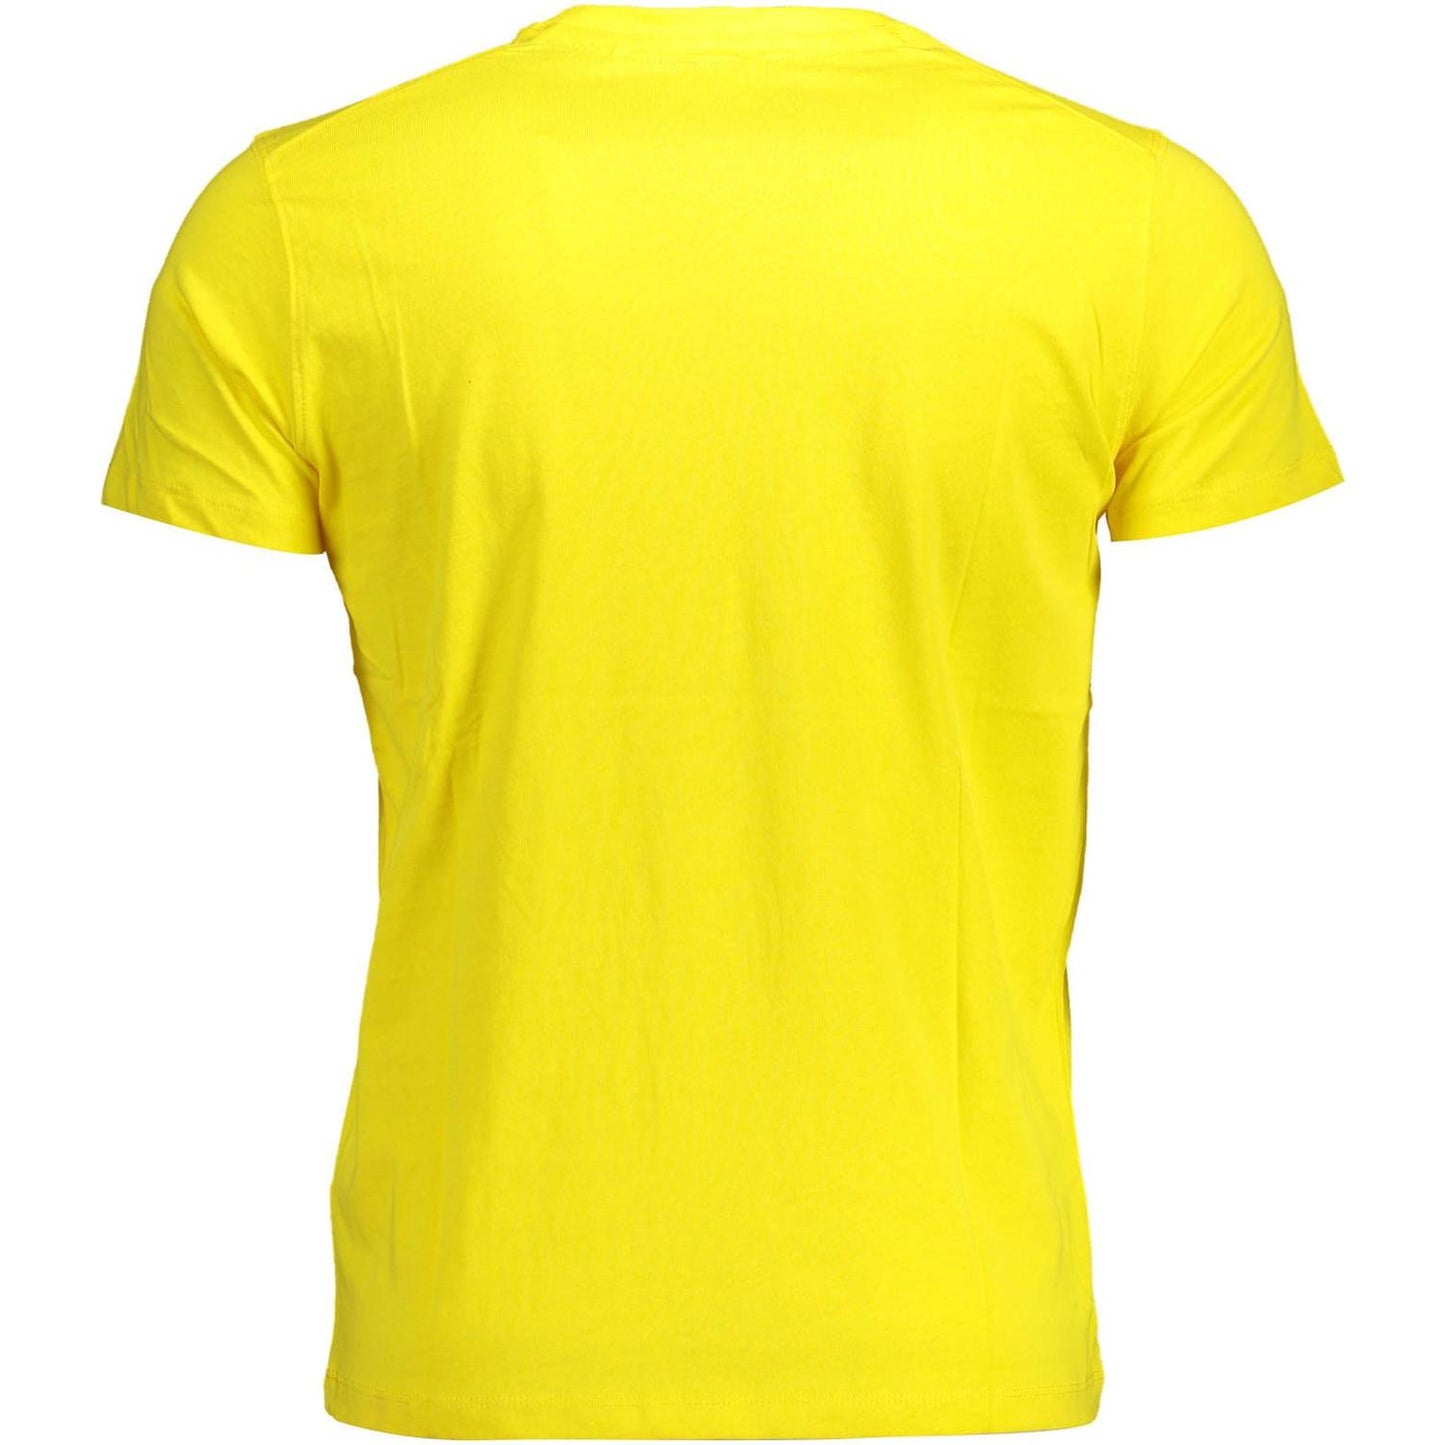 U.S. POLO ASSN. Sunny Yellow Crew Neck Logo Tee sunny-yellow-crew-neck-logo-tee